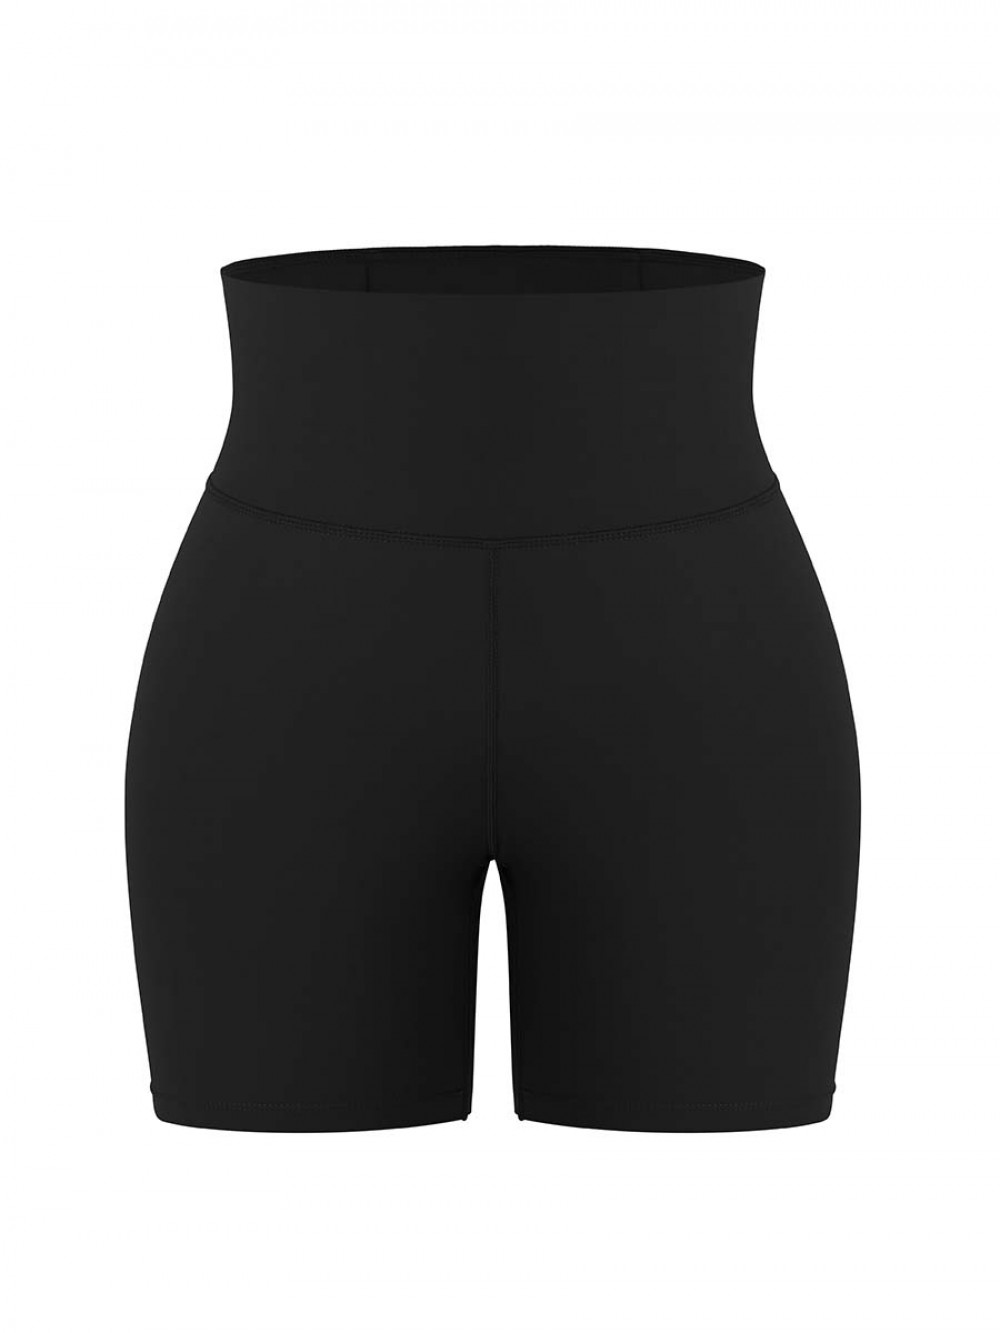 New Design Elasticity Scrunch Butt Shigh Waist Yoga Shorts